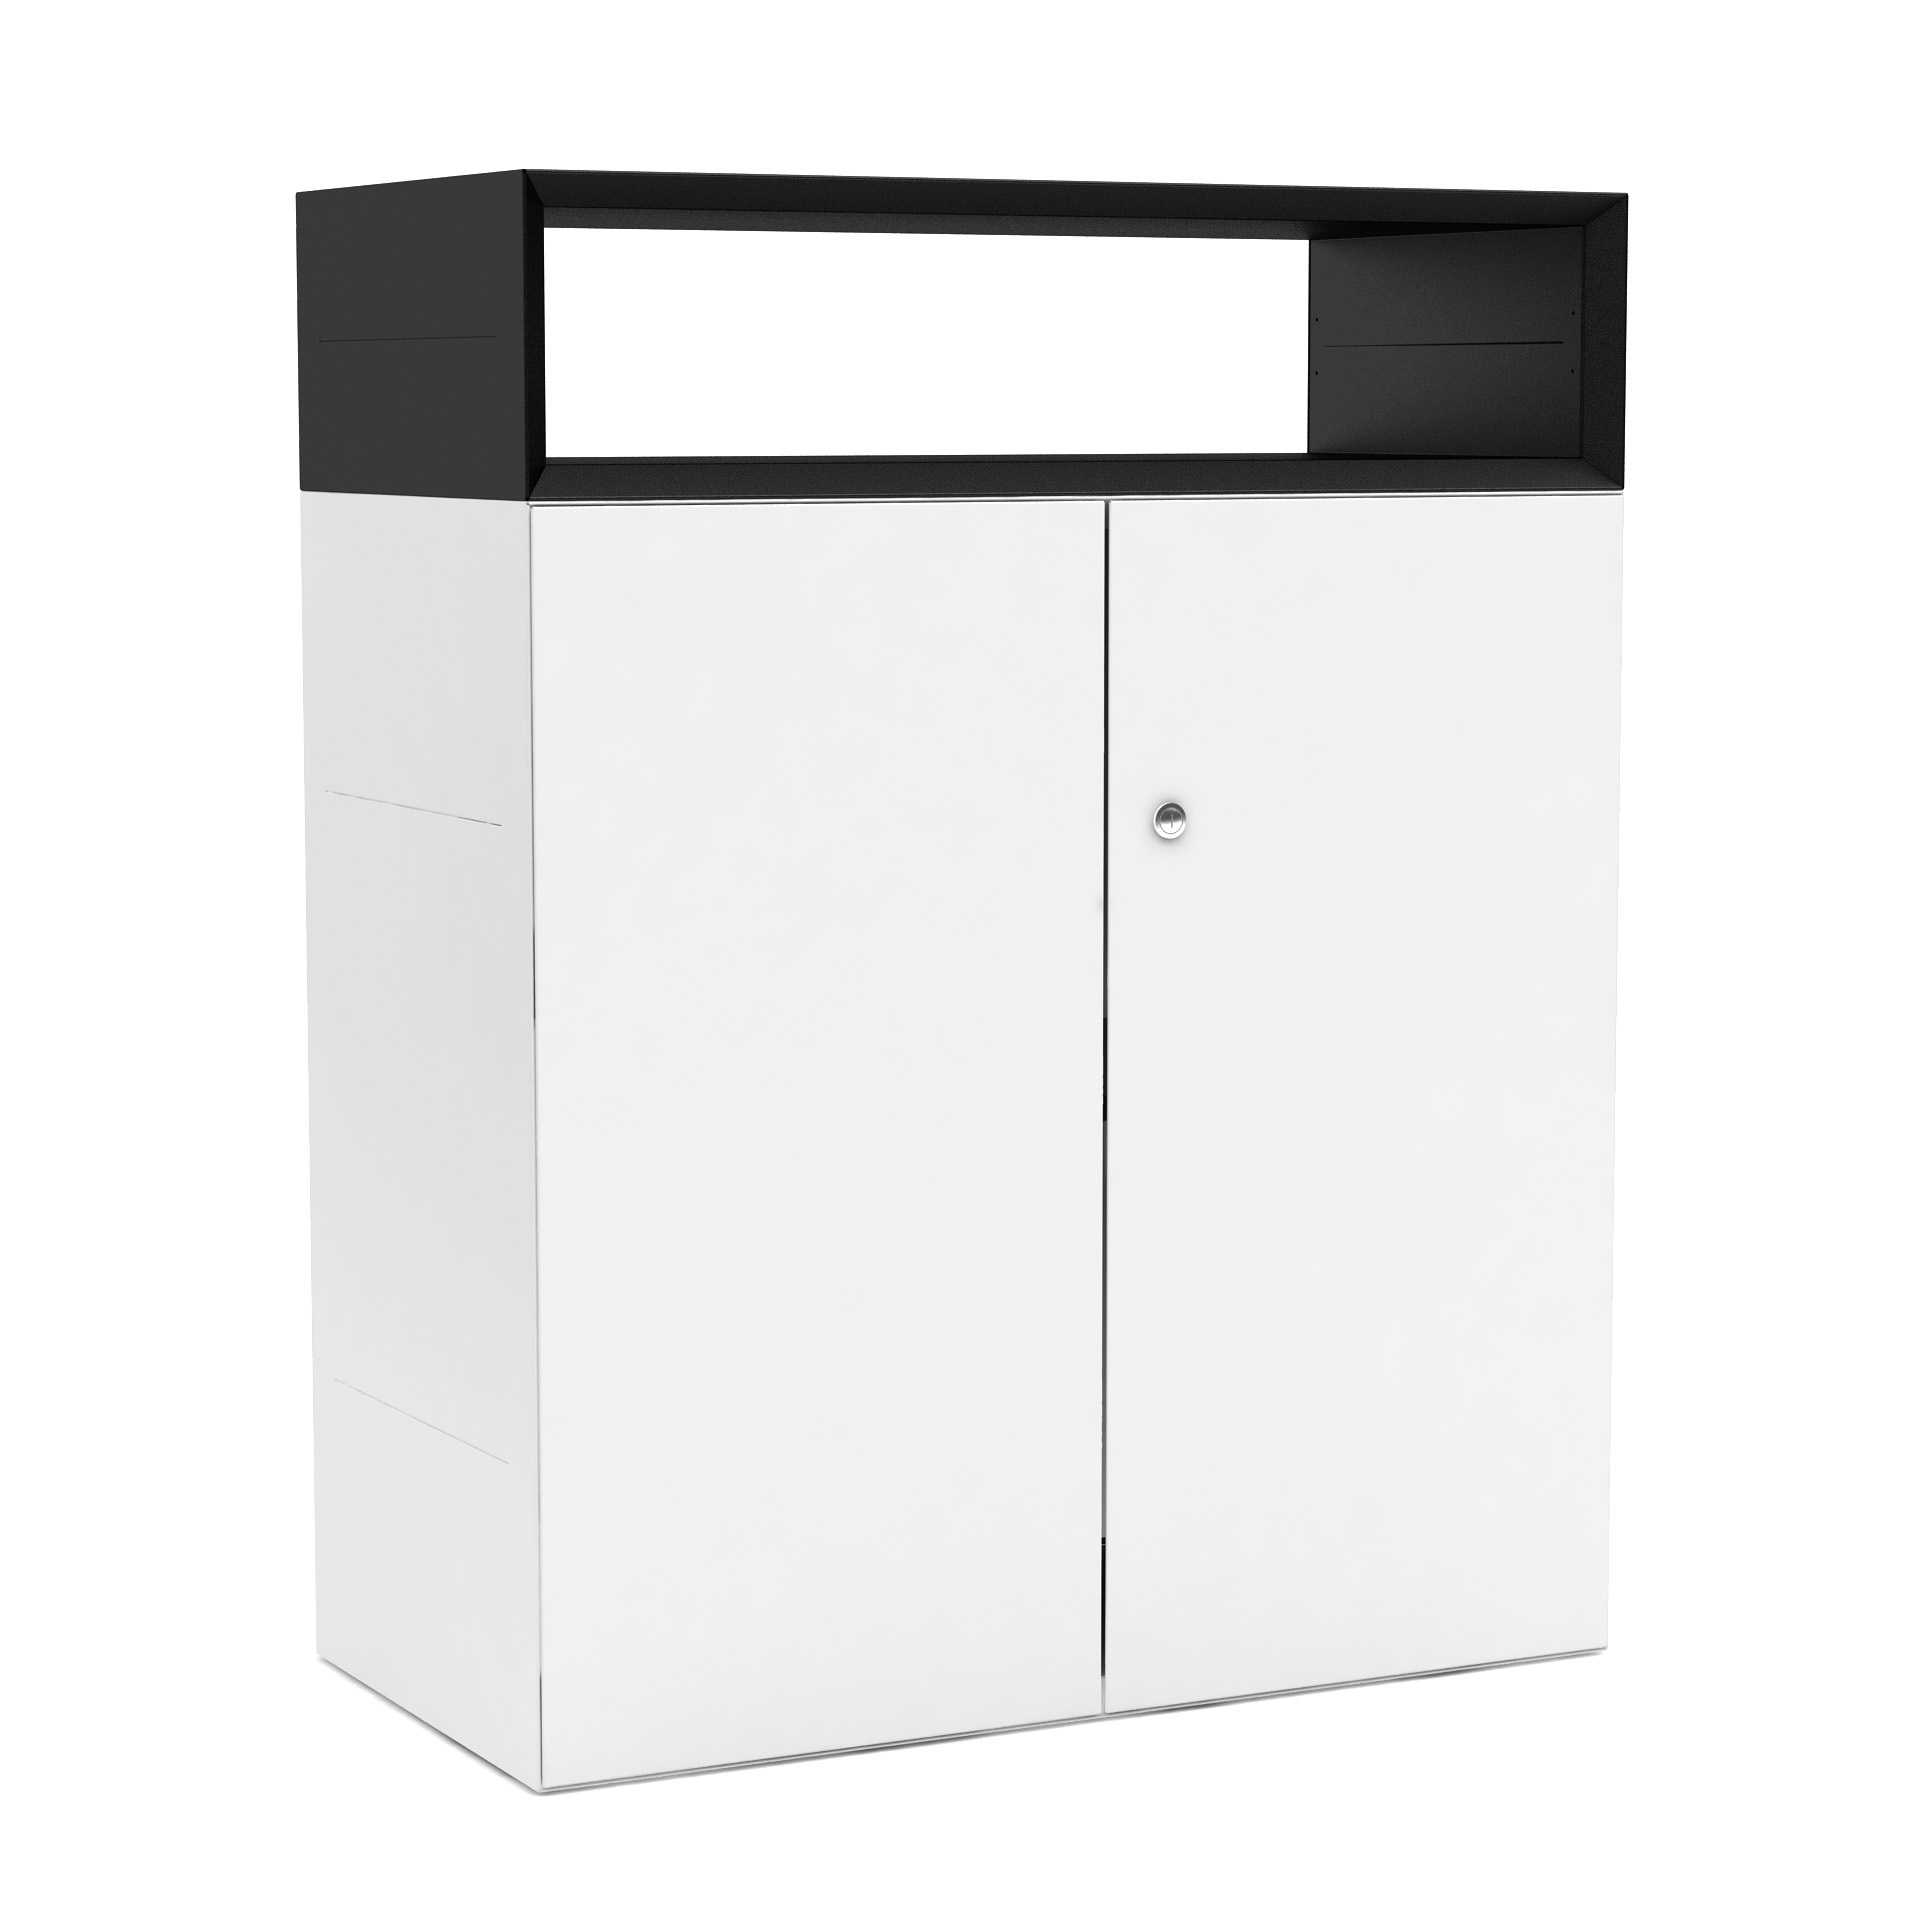 Büroschrank Sideboard weiss mit zwei Flügeltüren, und schwarzem Aufsatz, System Masterbox® B, 800 x H 1000 mm 2 Ordnerhöhen